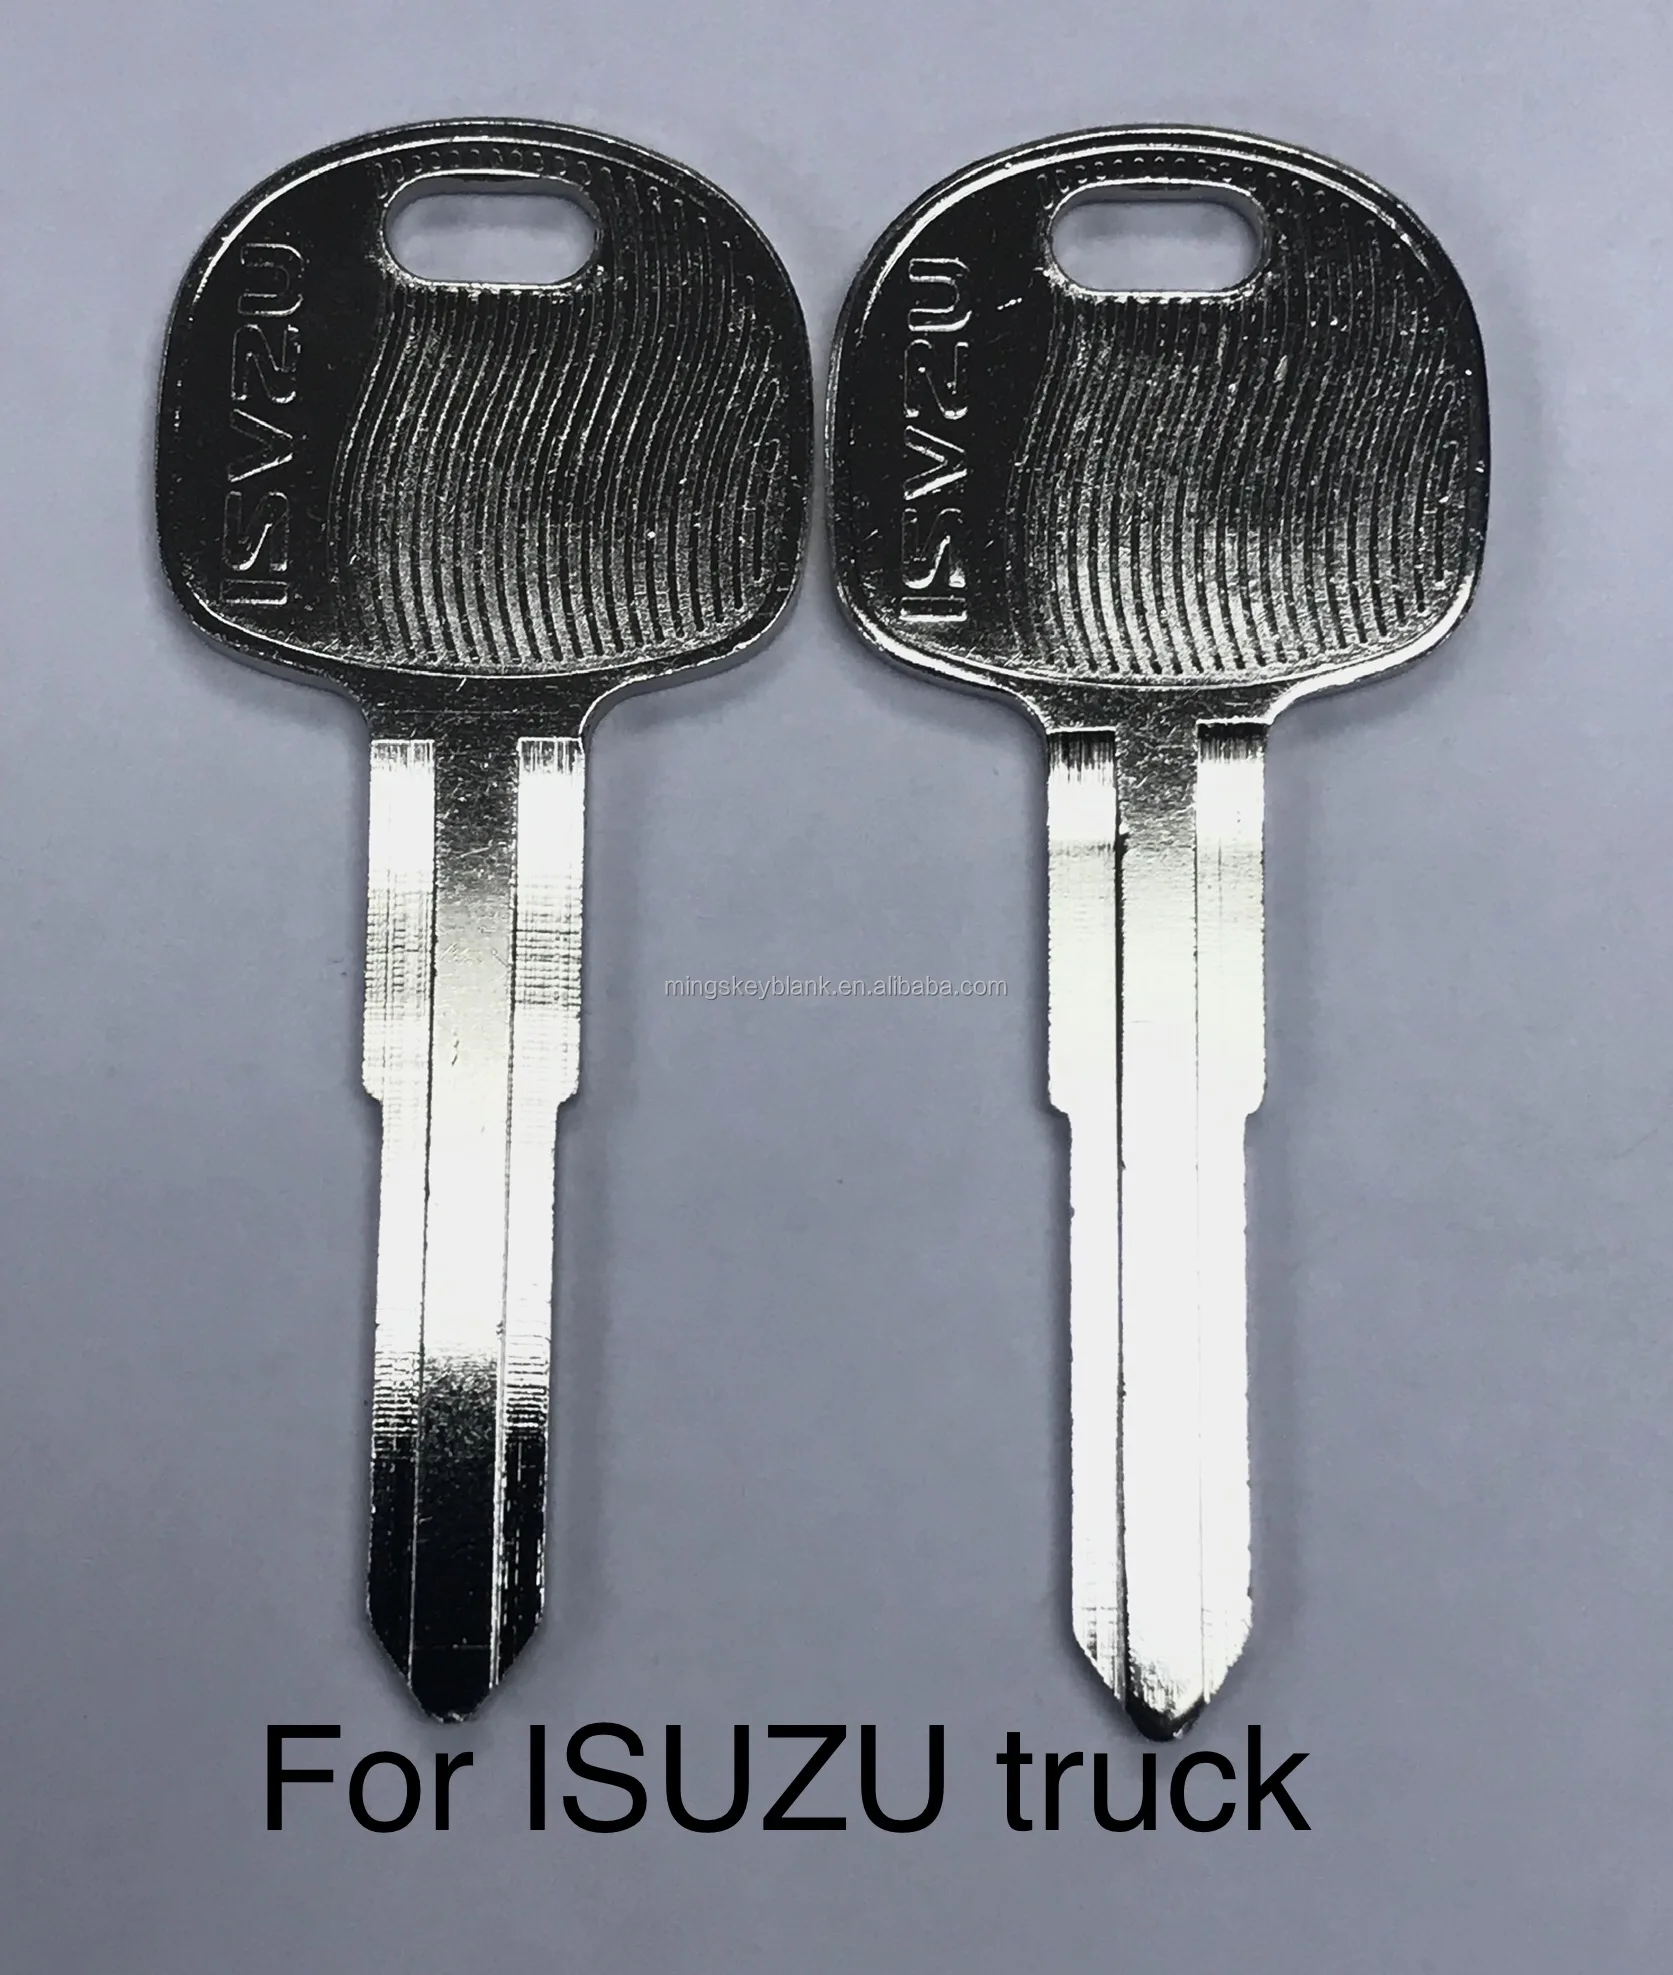 Newest Truck Key Blank For Isuzu Motor Car Key Blank With Nickel 